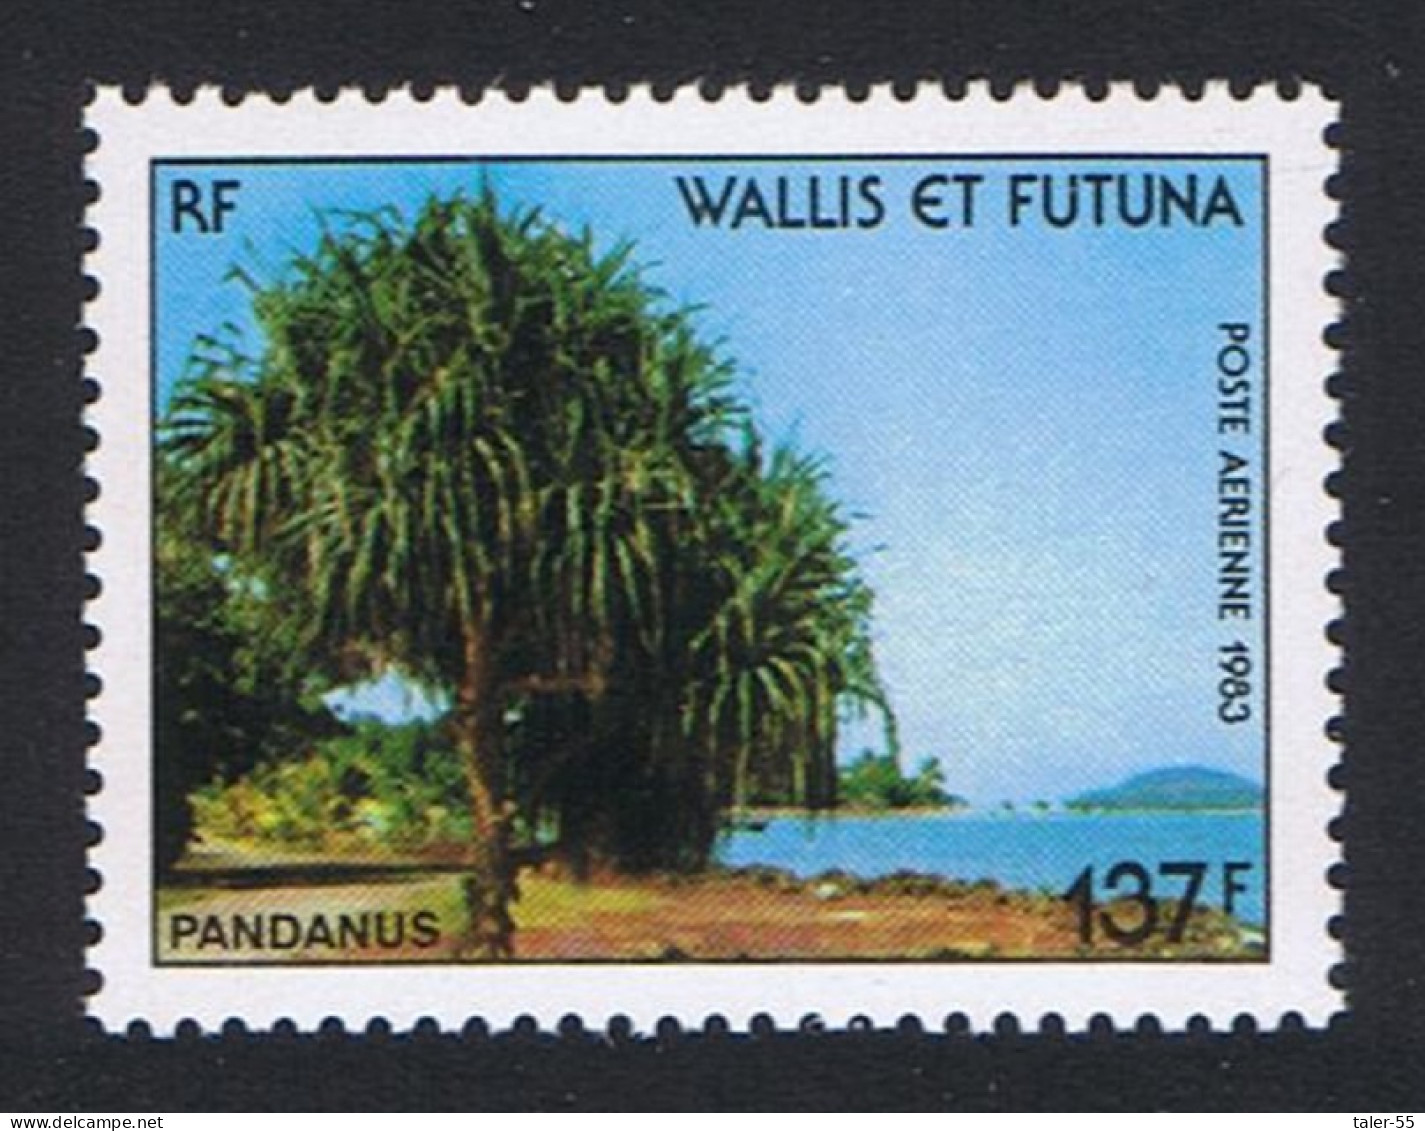 Wallis And Futuna Pandanus Tree 1983 MNH SG#435 Sc#C127 - Nuovi